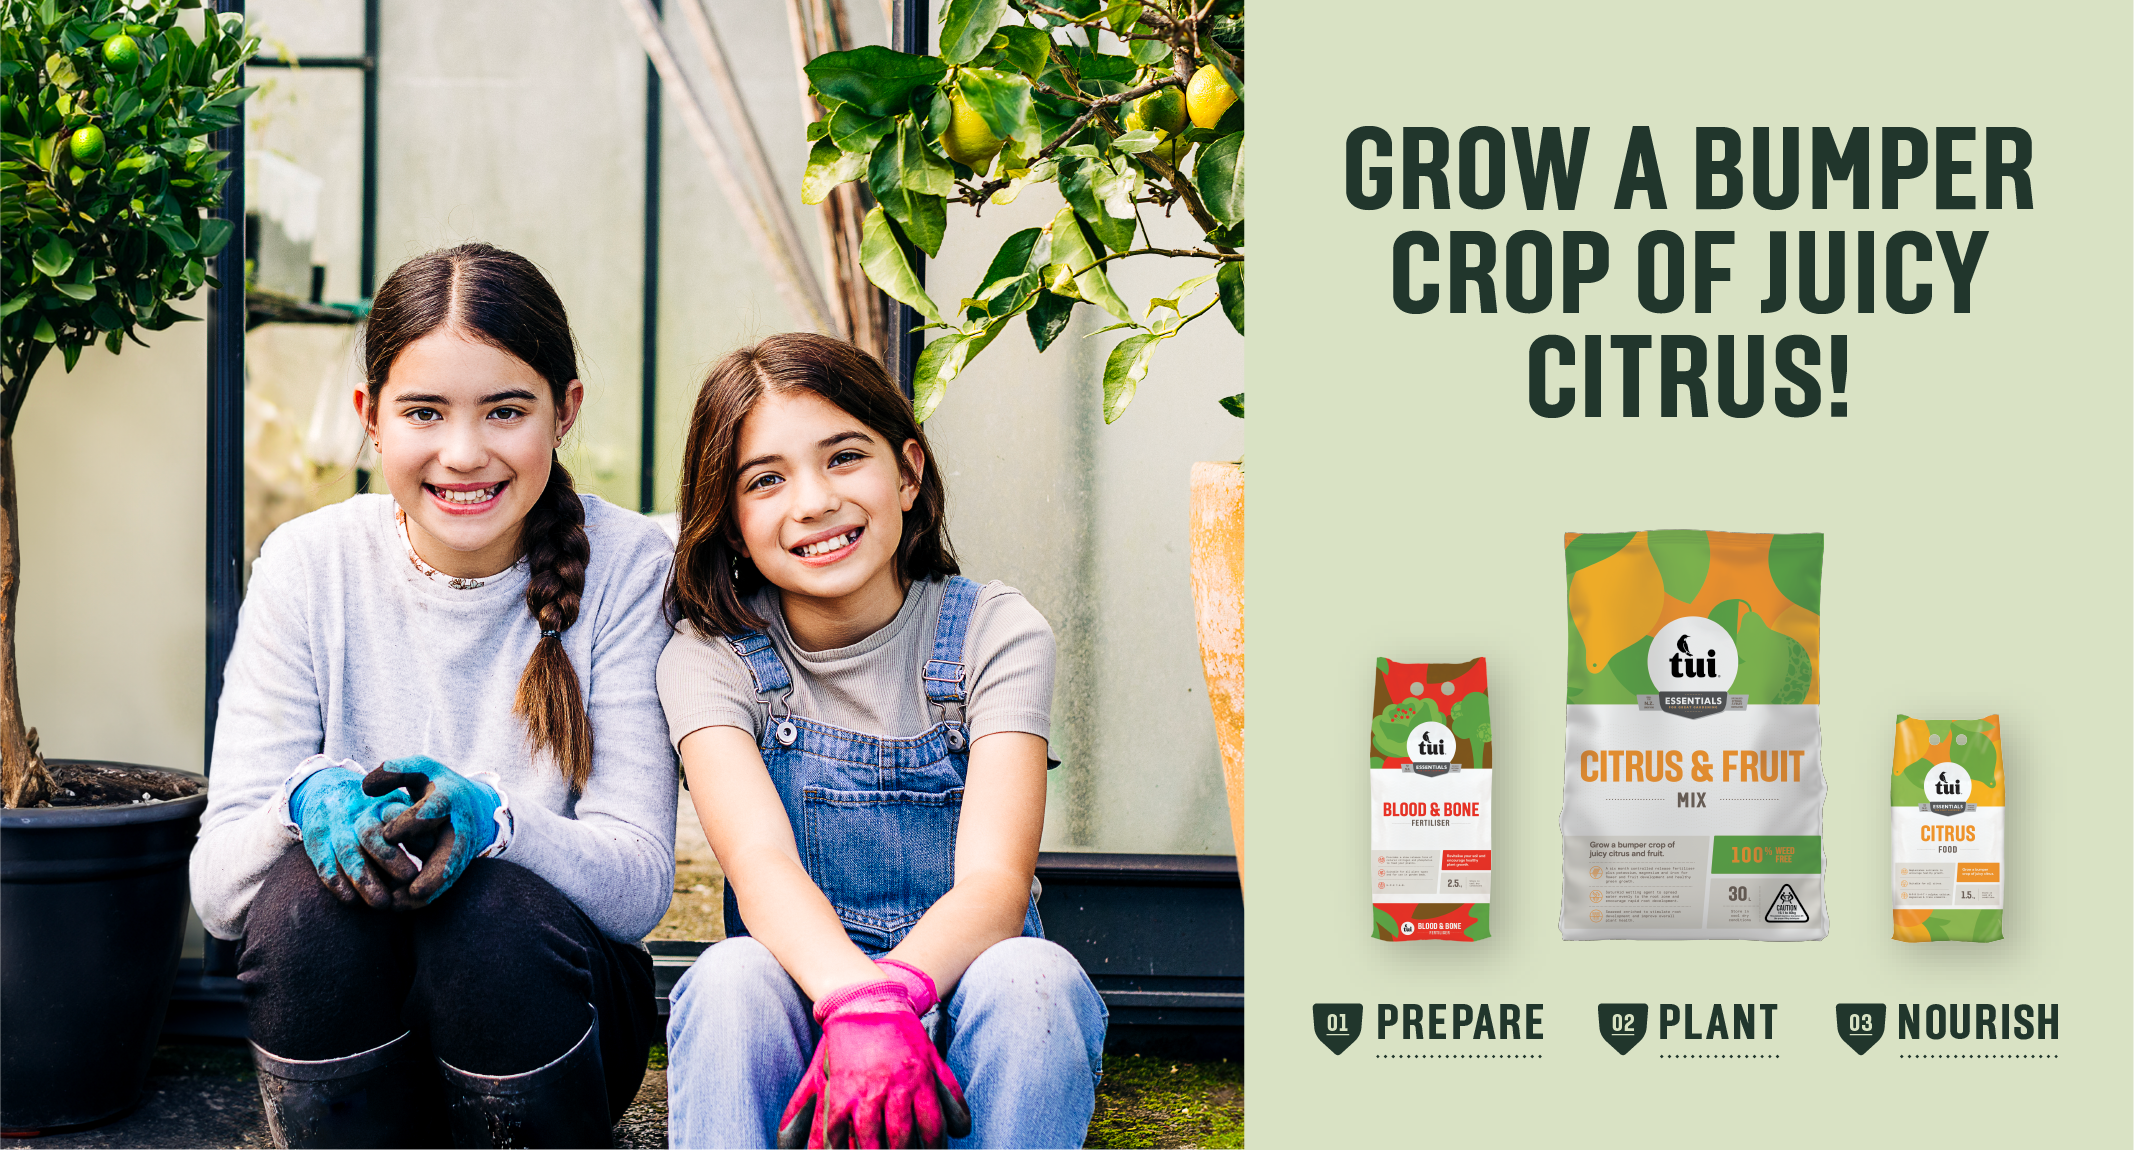 Grow a bumper crop of citrus